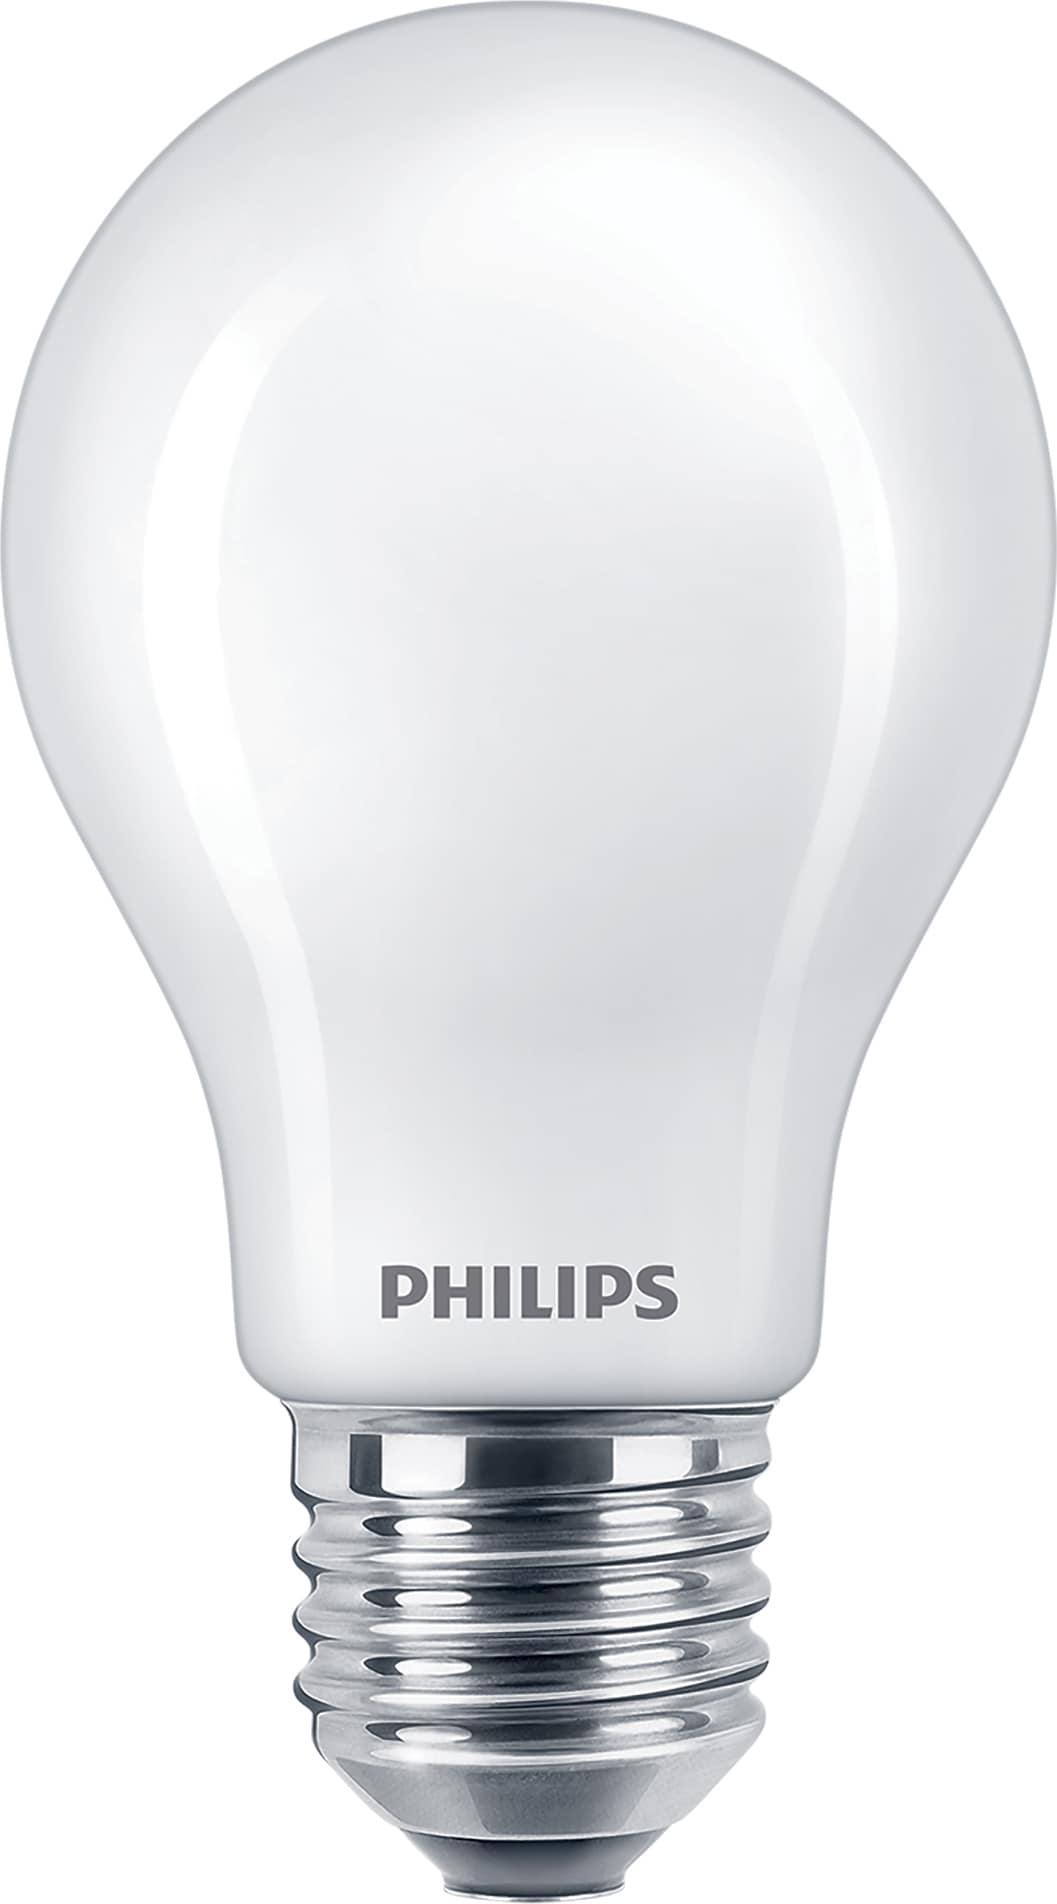 Philips LED-elpære 7W E27